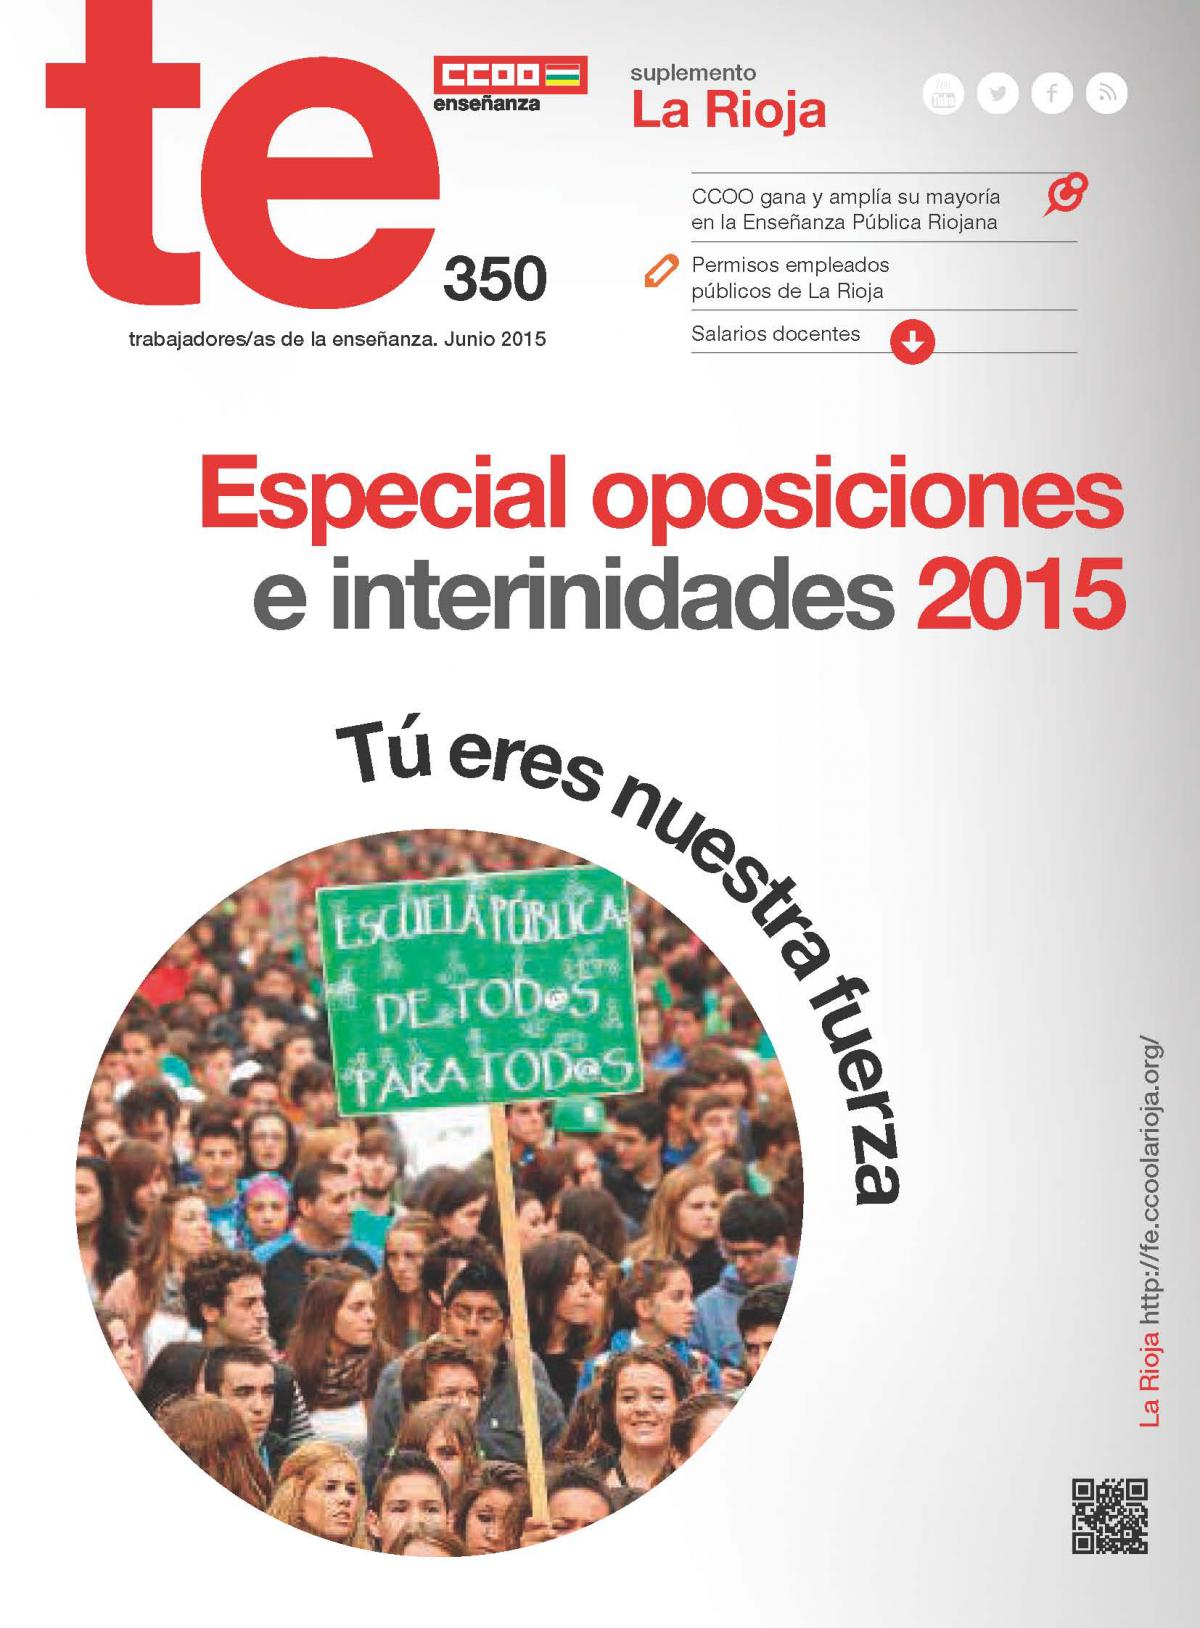 Especial oposiciones e interinidades 2015